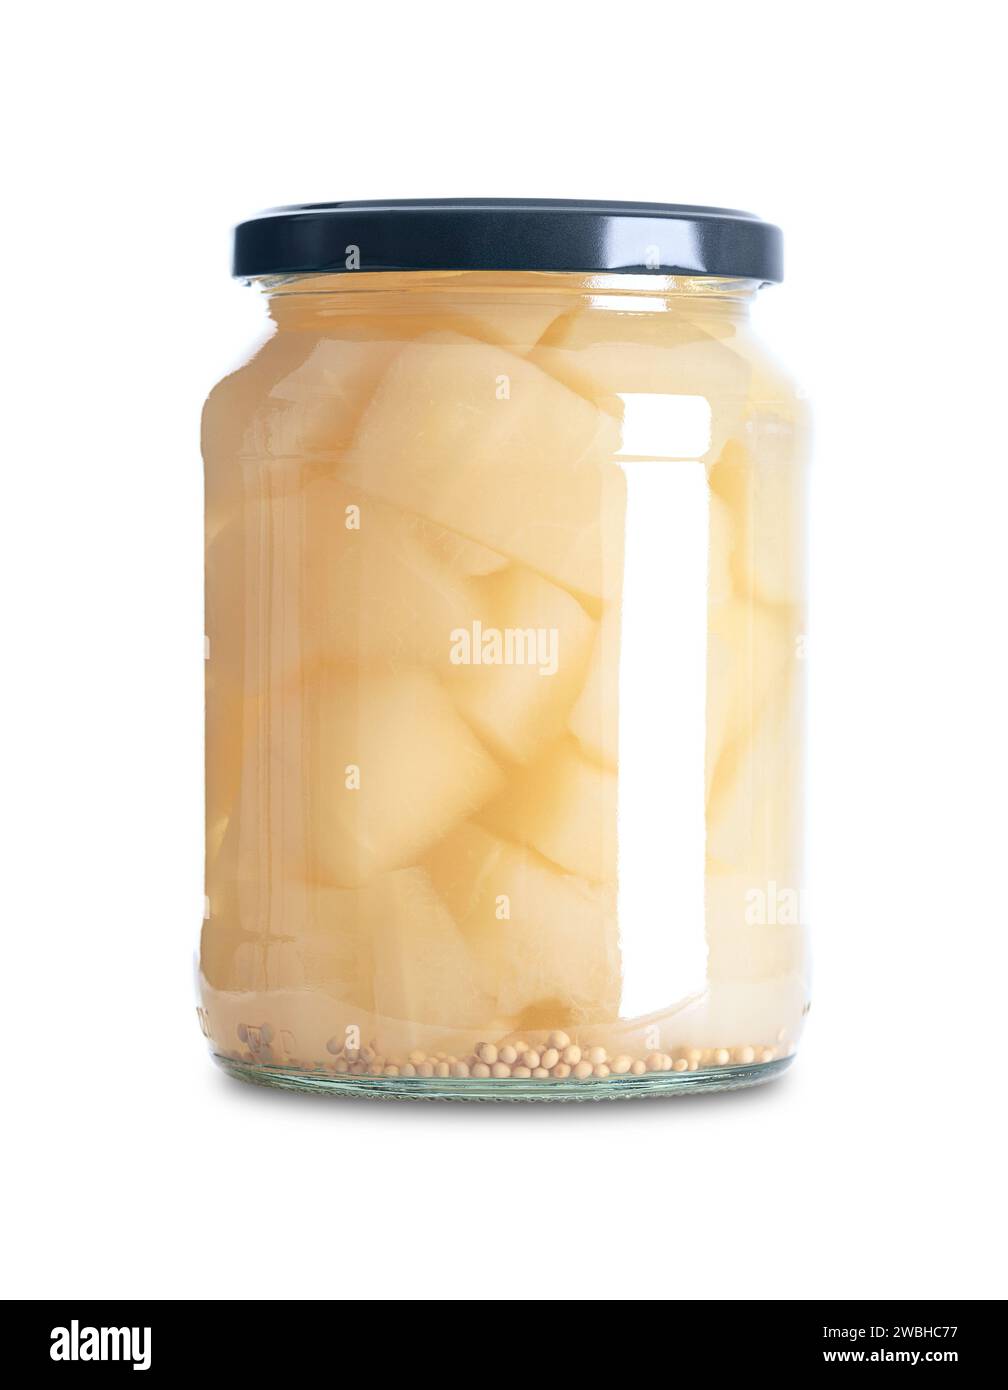 Sottaceti alla senape, cetriolini sottaceto dolci e aspri, in un vaso di vetro. Pezzi di cetriolo conservati in una salamoia di aceto, sale, zucchero e semi di senape. Foto Stock